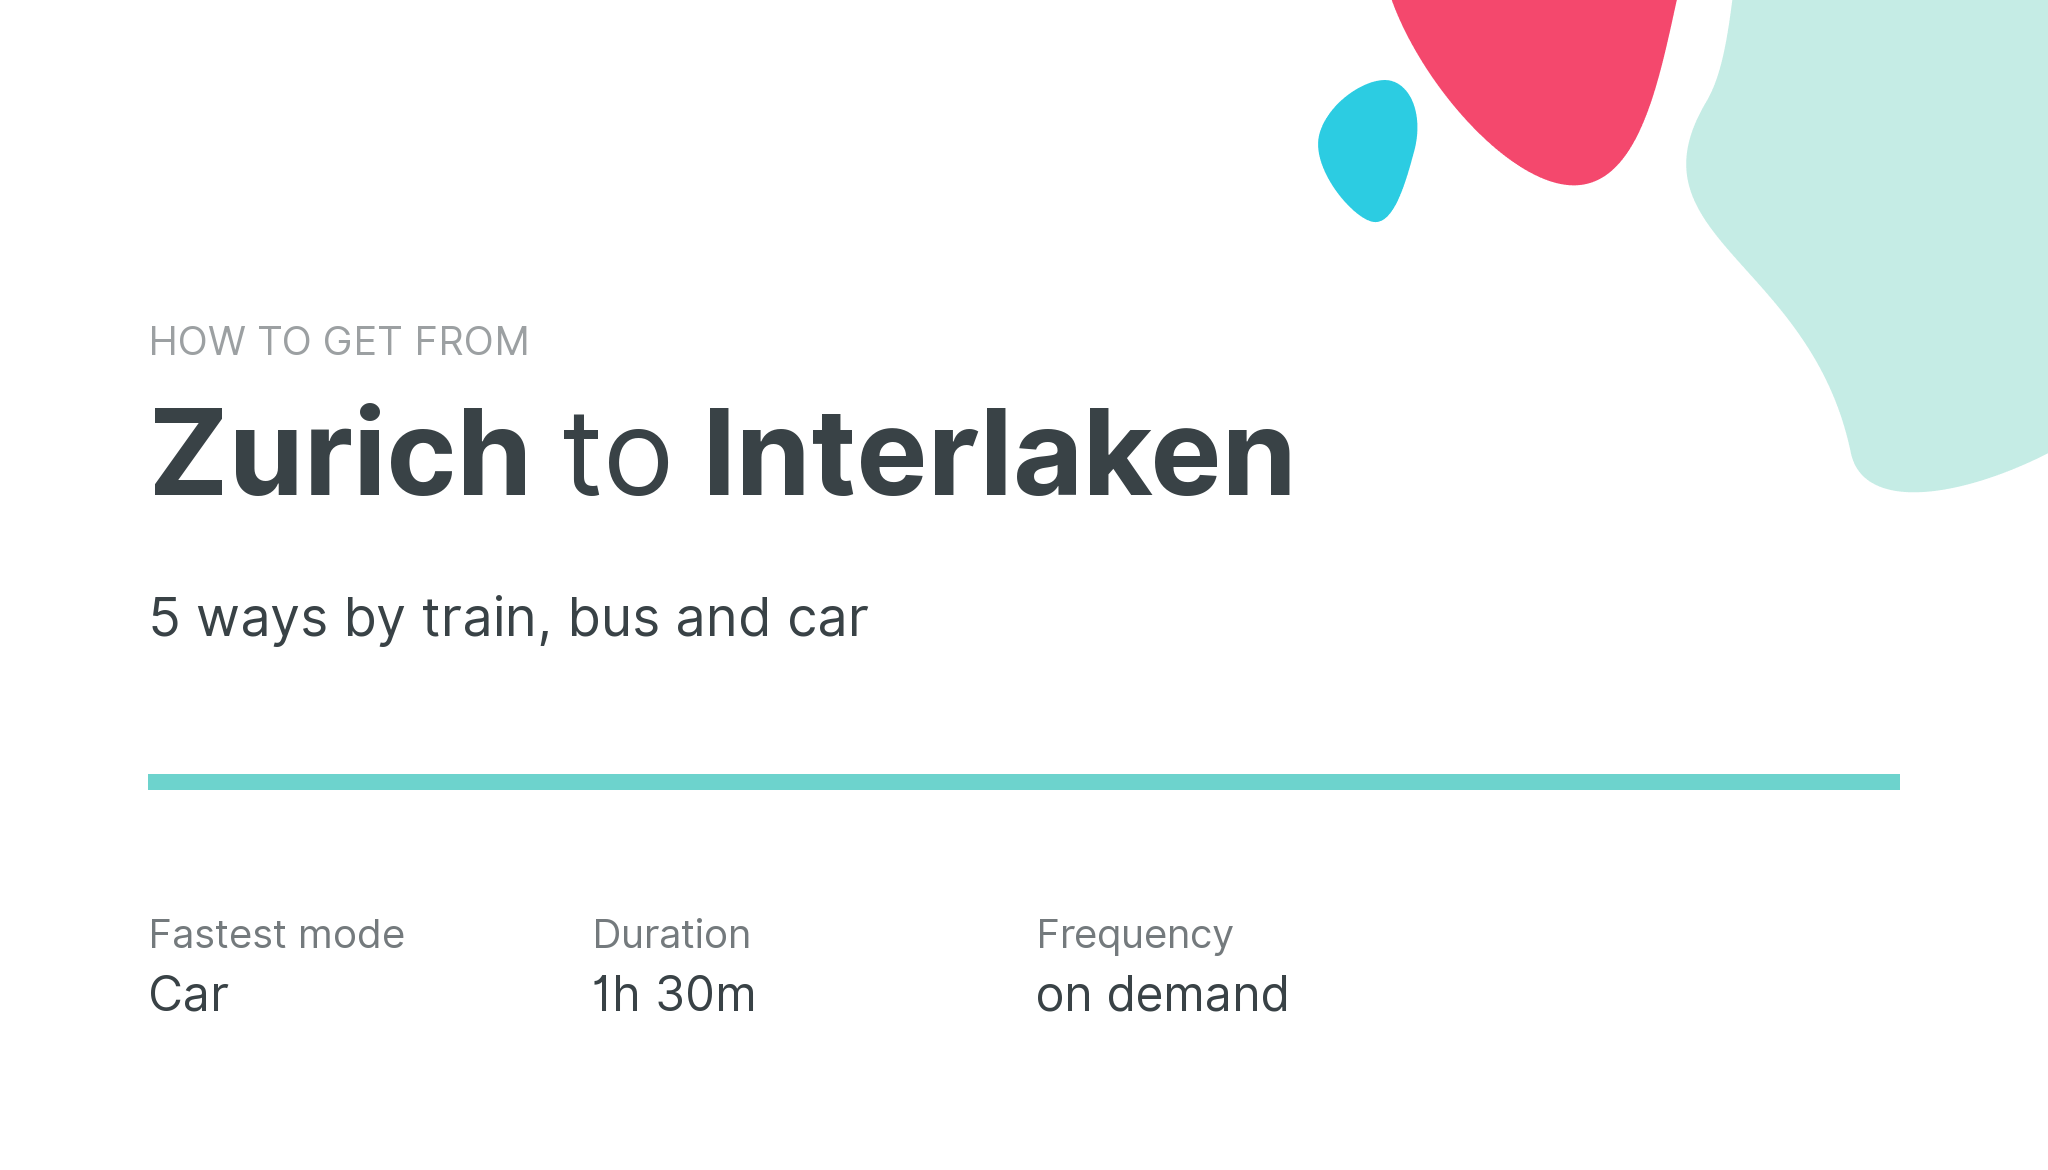 How do I get from Zurich to Interlaken